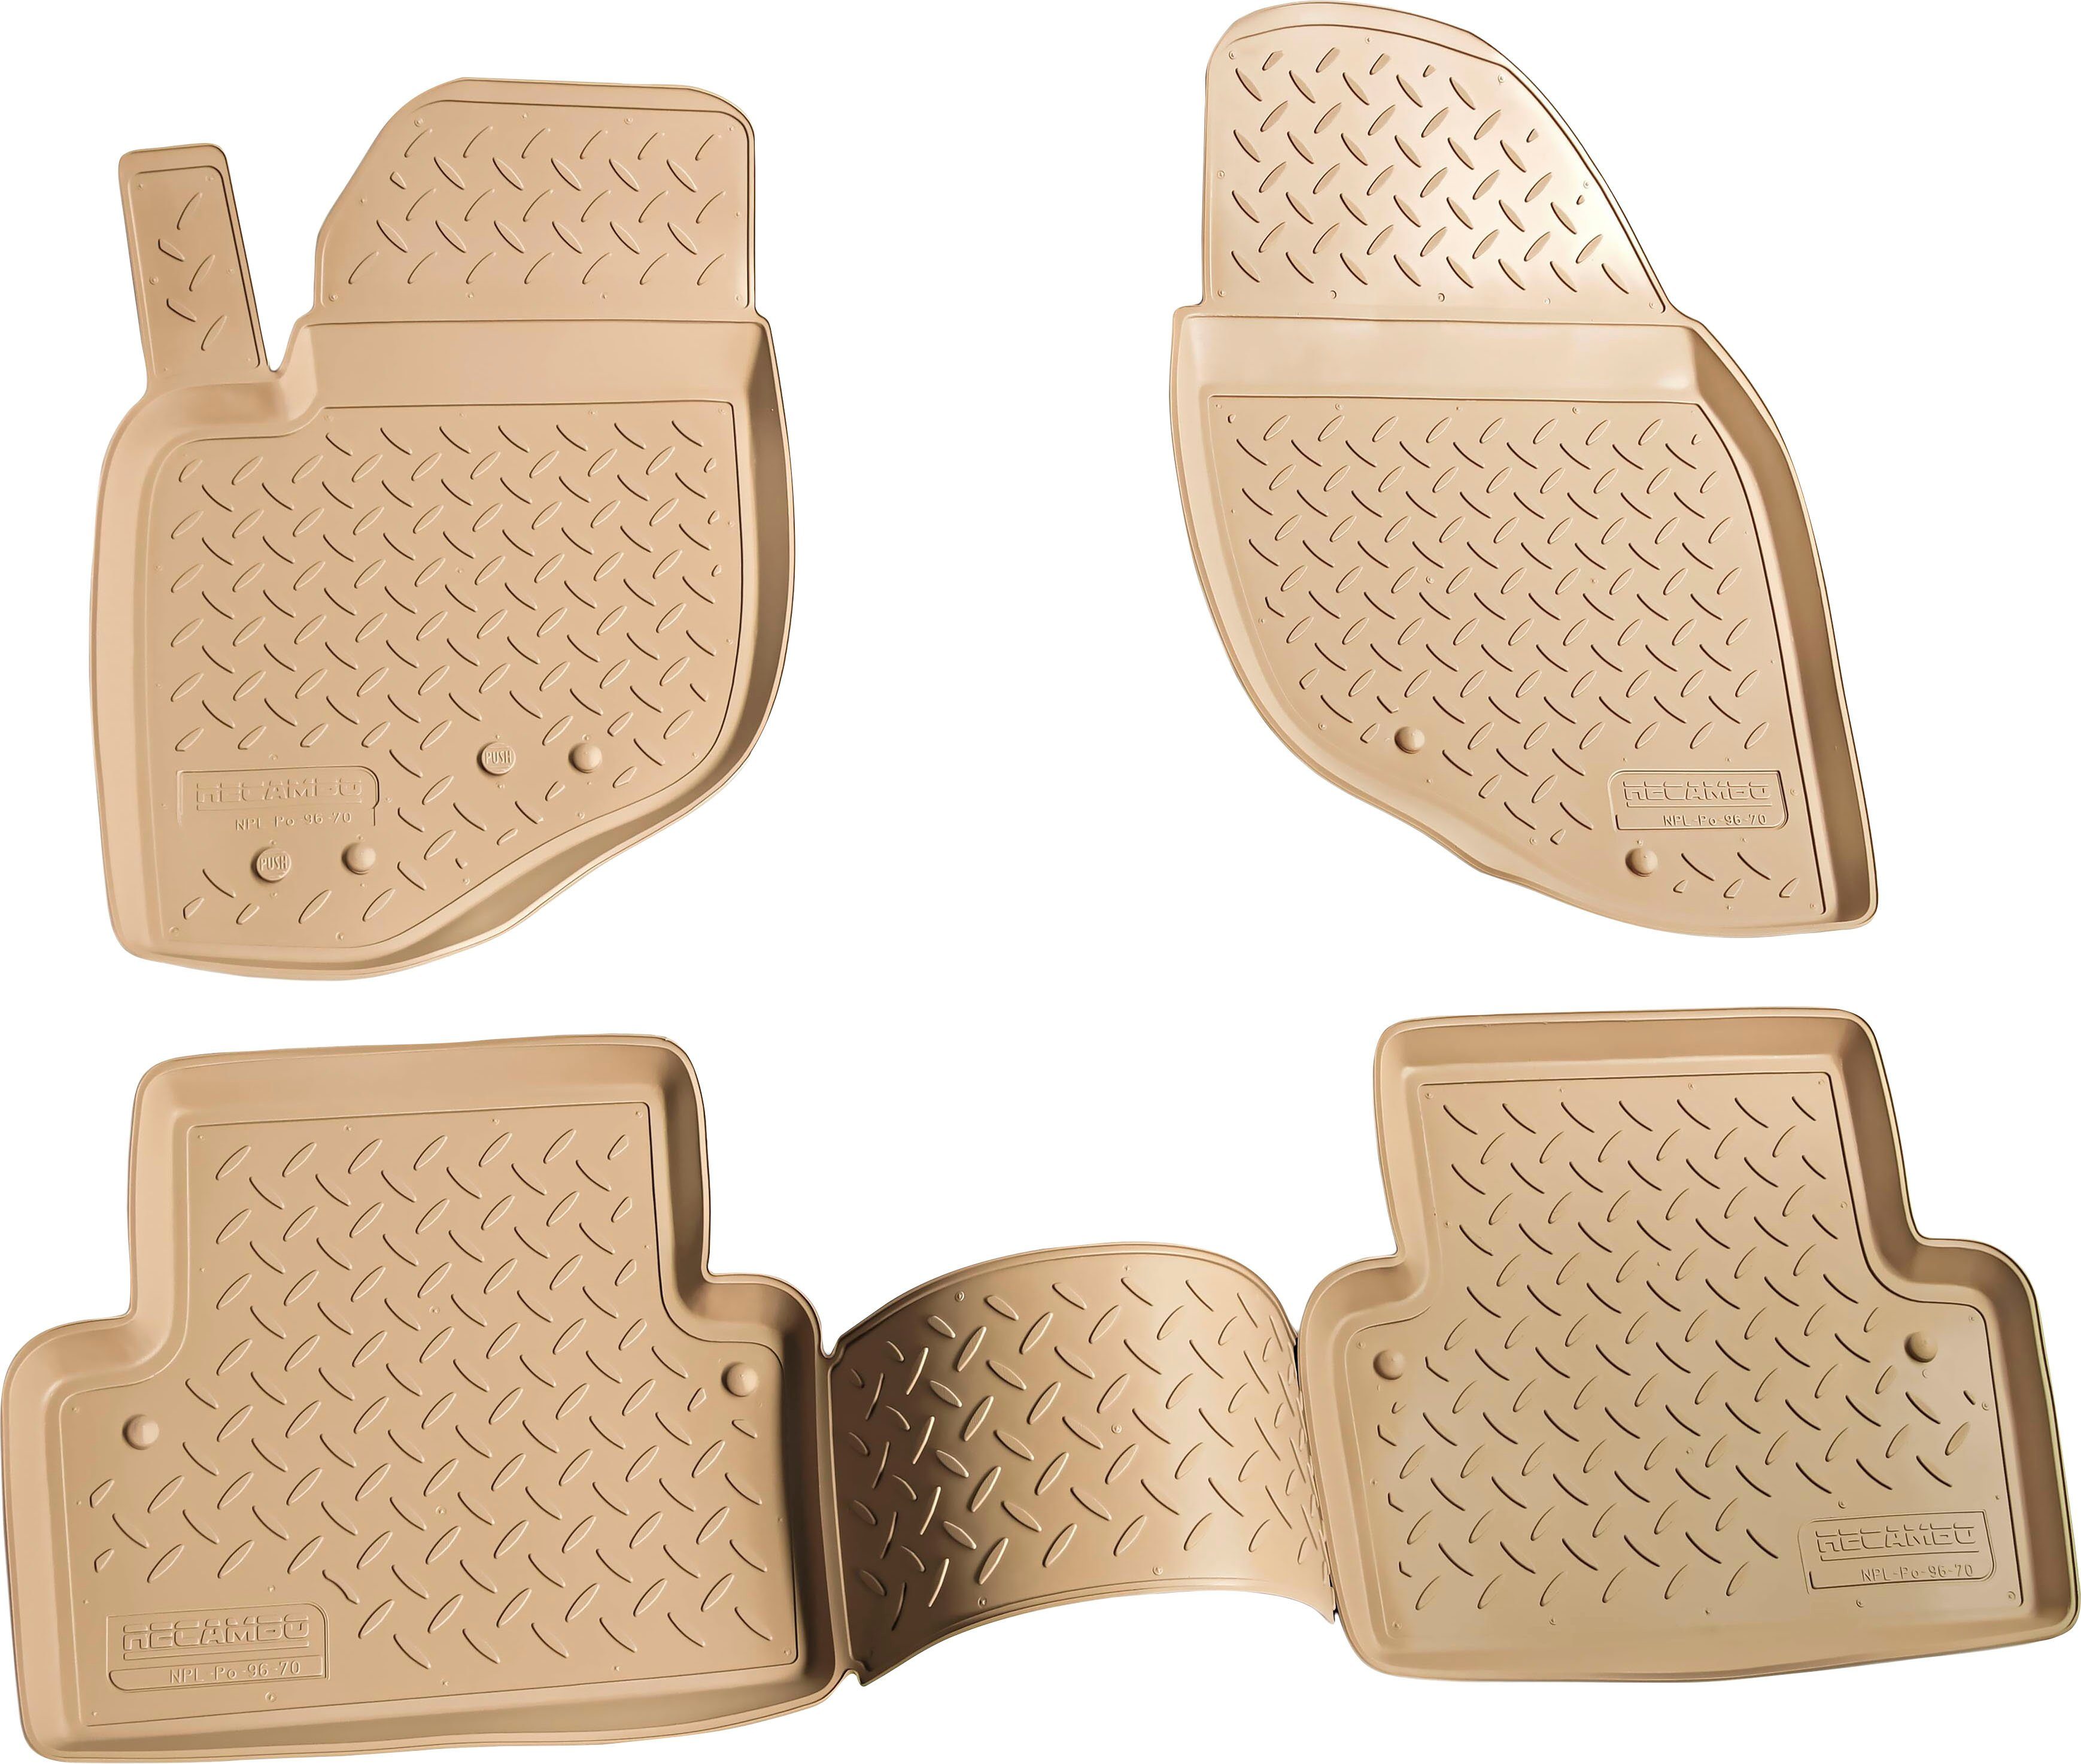 Recambo 3D Gummi Fußmatten kompatibel für FIAT Grande Punto | 199 |  2005-2018 | Auto Gummimatten | Passgenau | mit Rand | beige